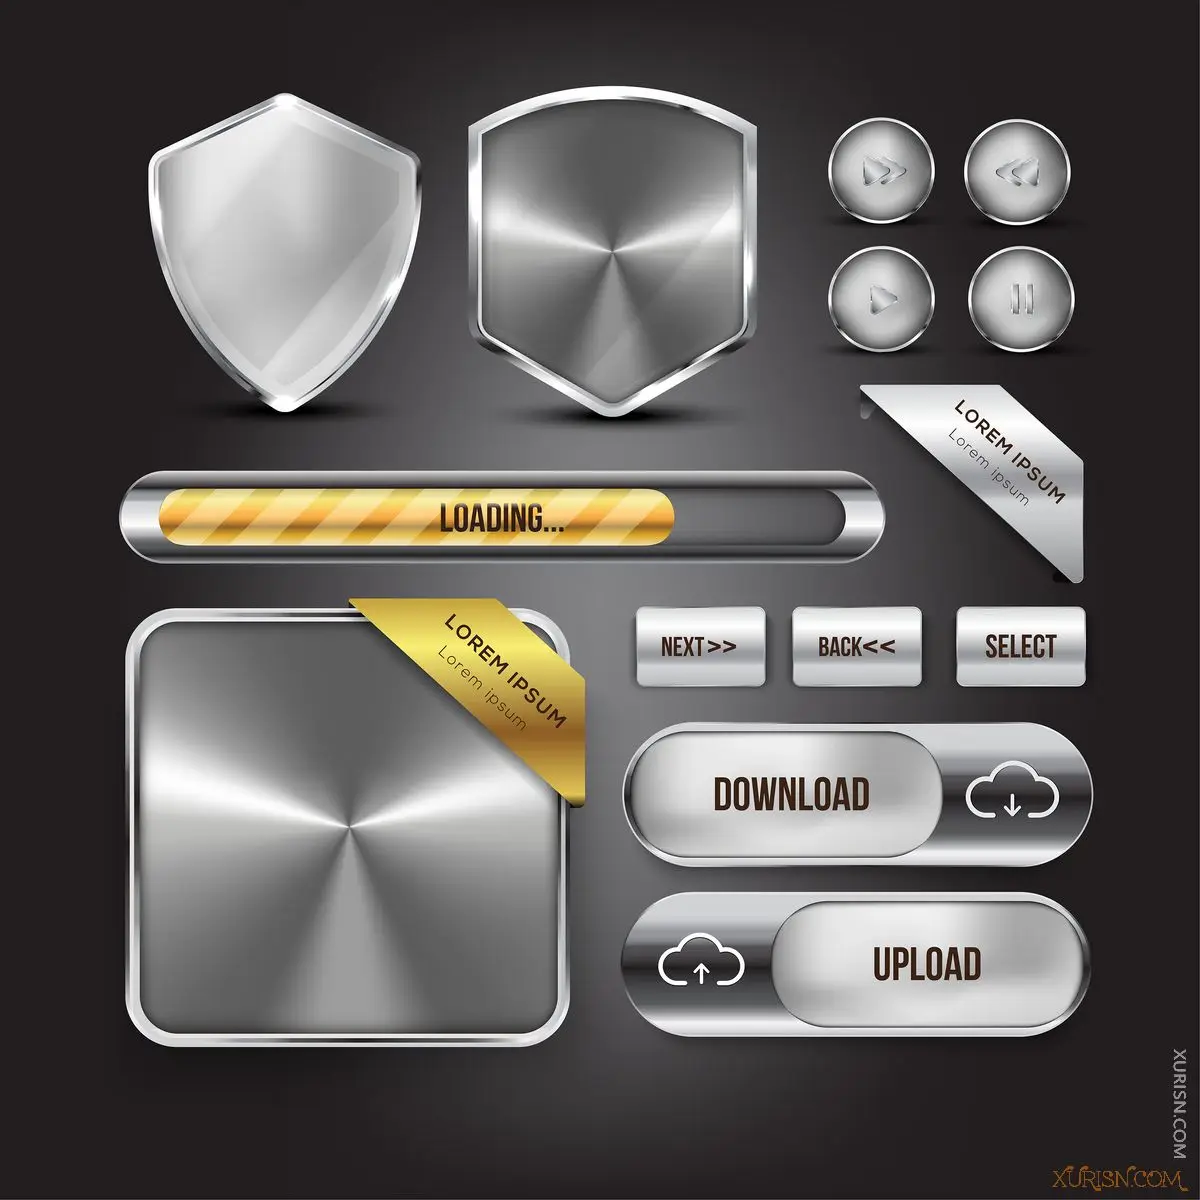 矢量图形-7组 网页设计金色 银色 透明玻璃等按钮矢量模板(5)